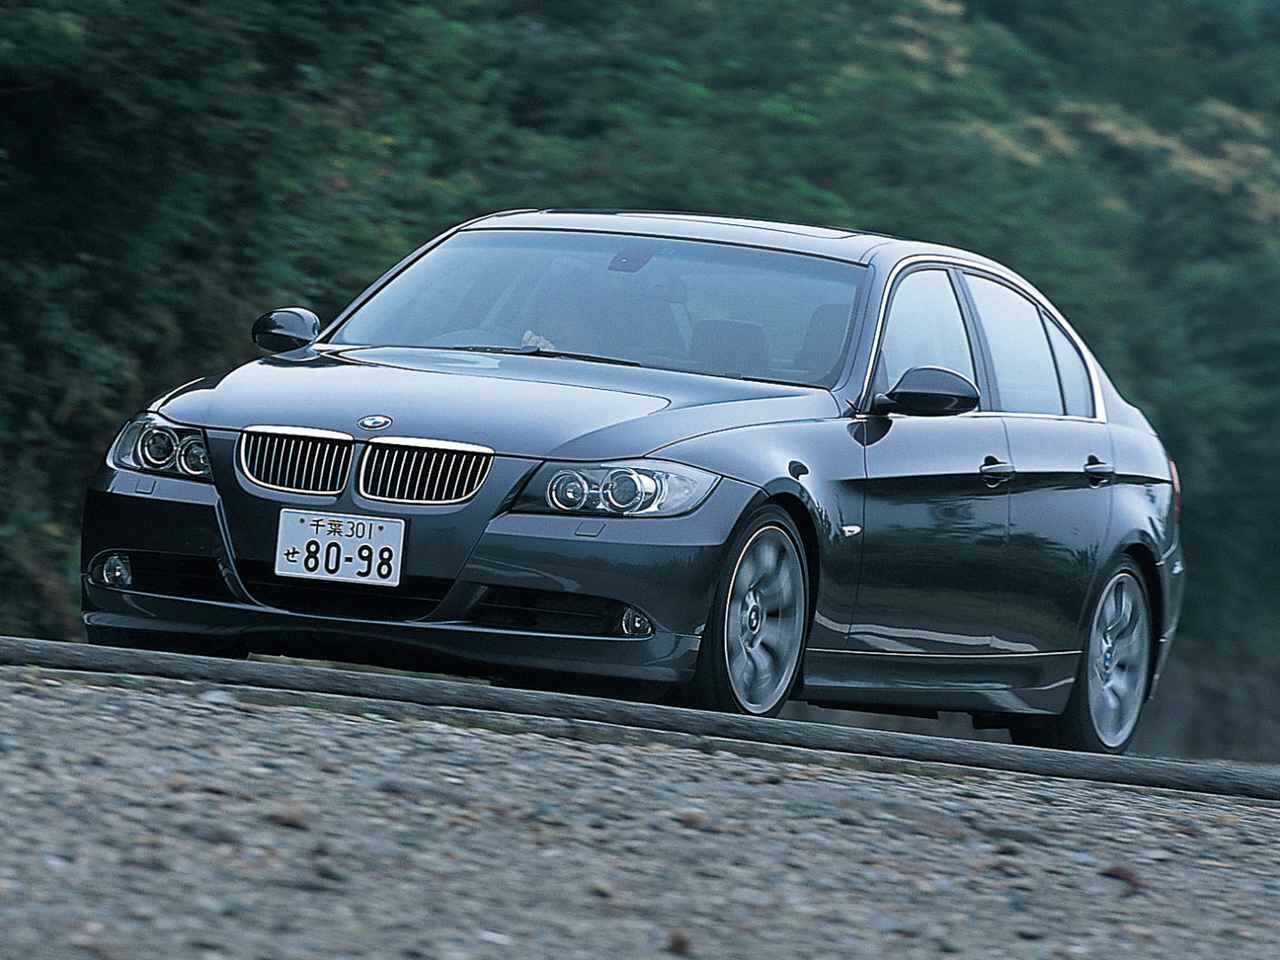 【ヒットの法則88】5代目E90型BMW3シリーズの本命「325i」は期待どおりのベストバランス